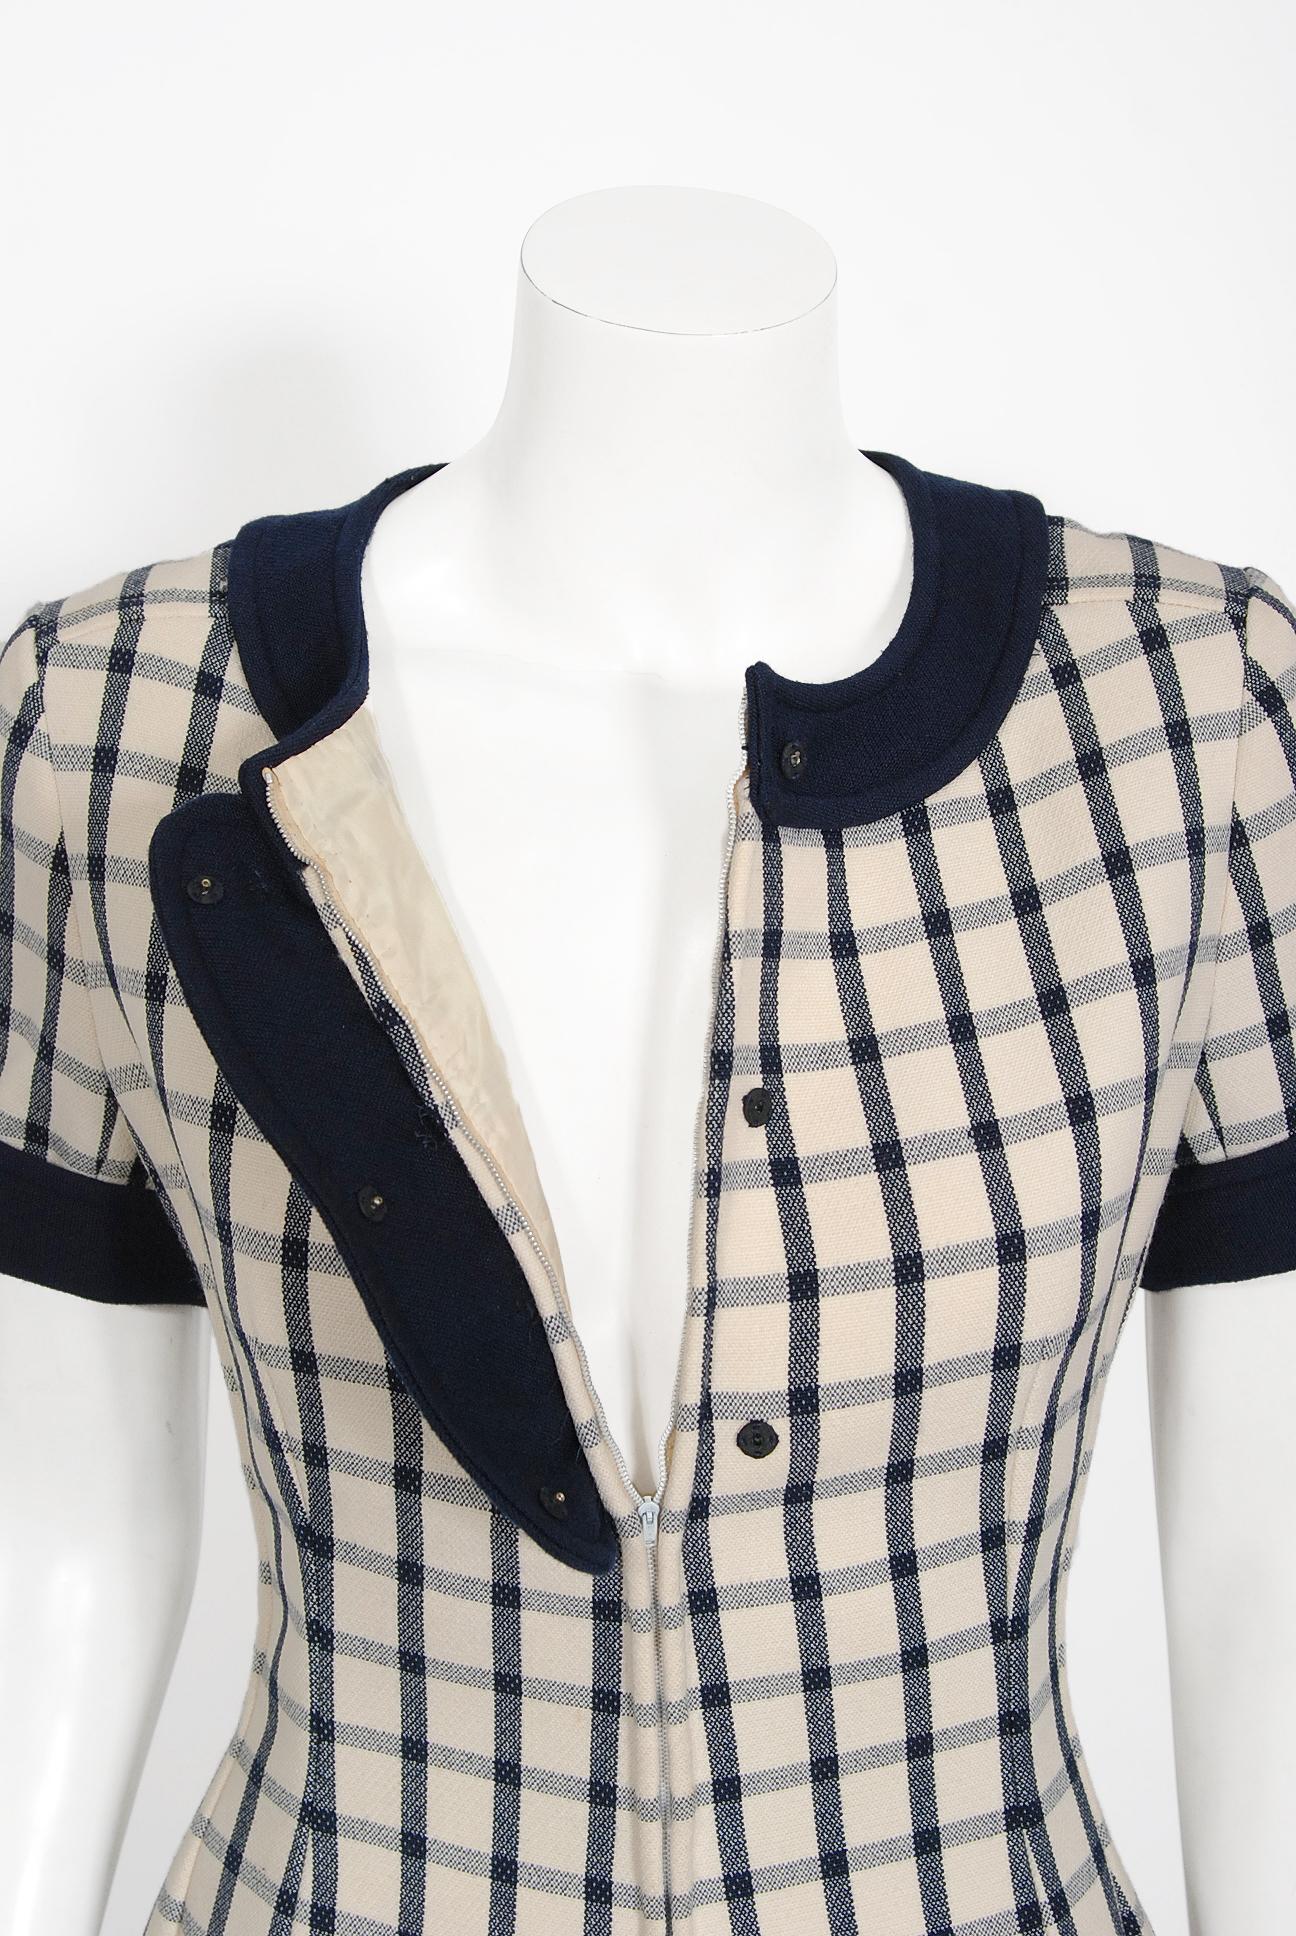 courreges vintage belted striped dress